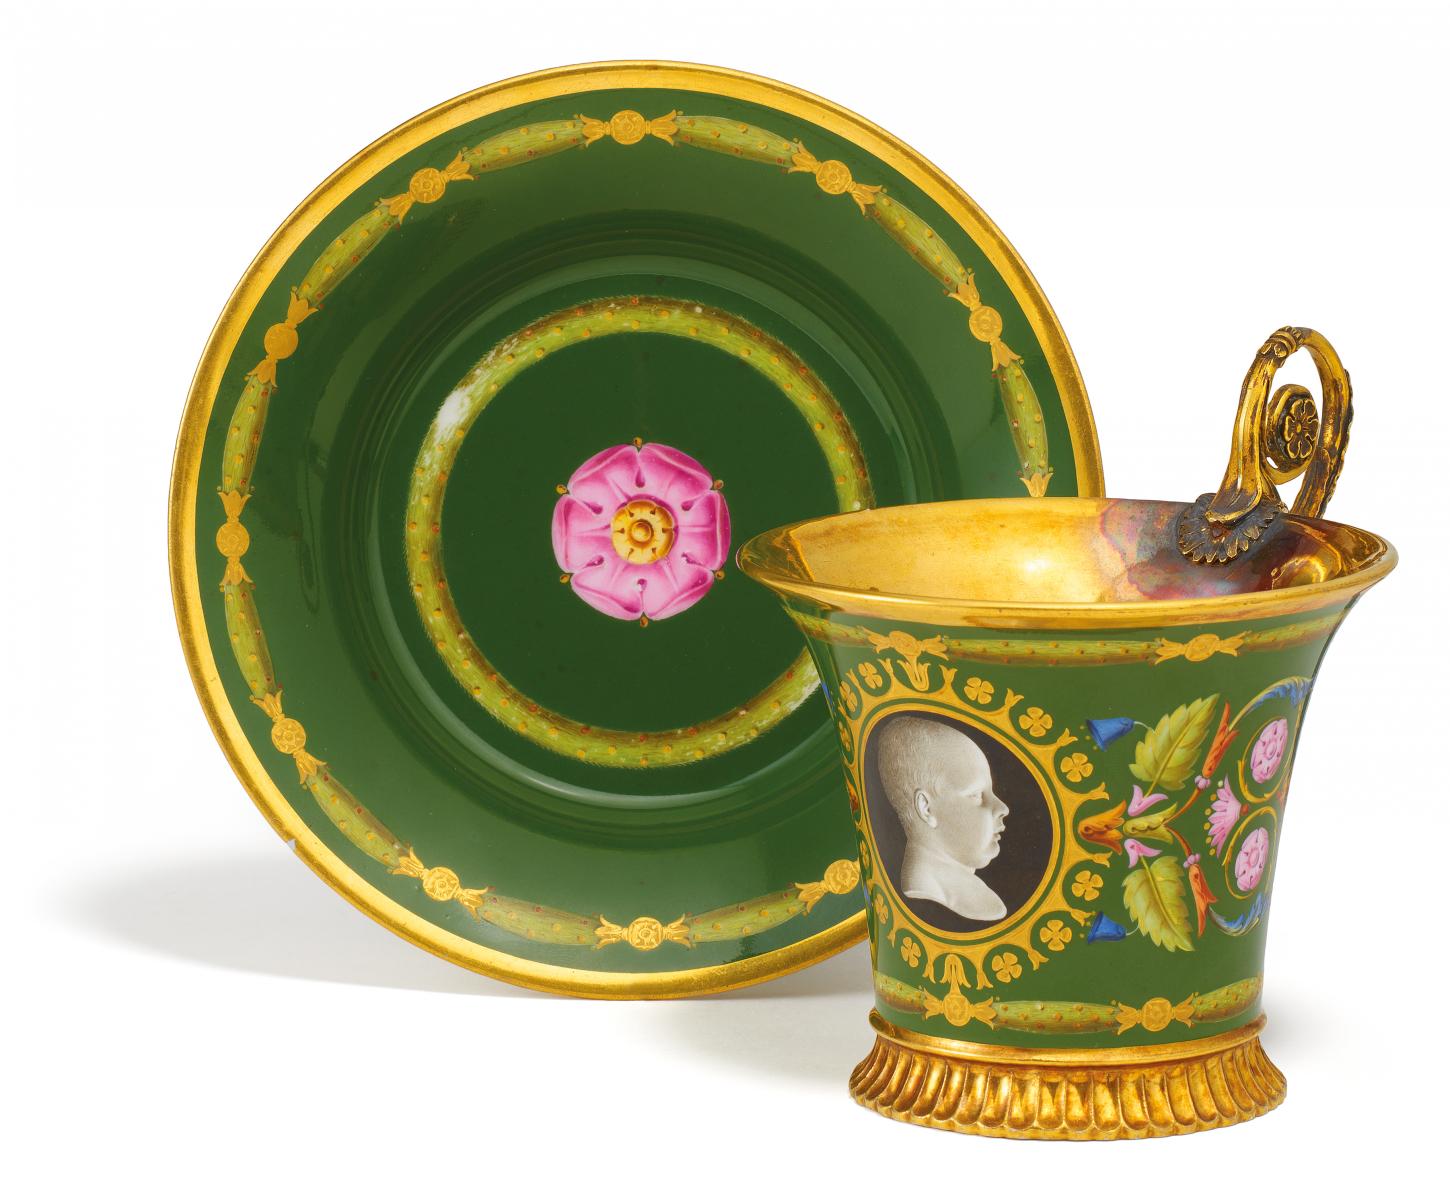 Sevres - Tasse und Untertasse mit der Kinderbueste des Roi de Rome Napoleon II 1811-1832, 64496-1, Van Ham Kunstauktionen